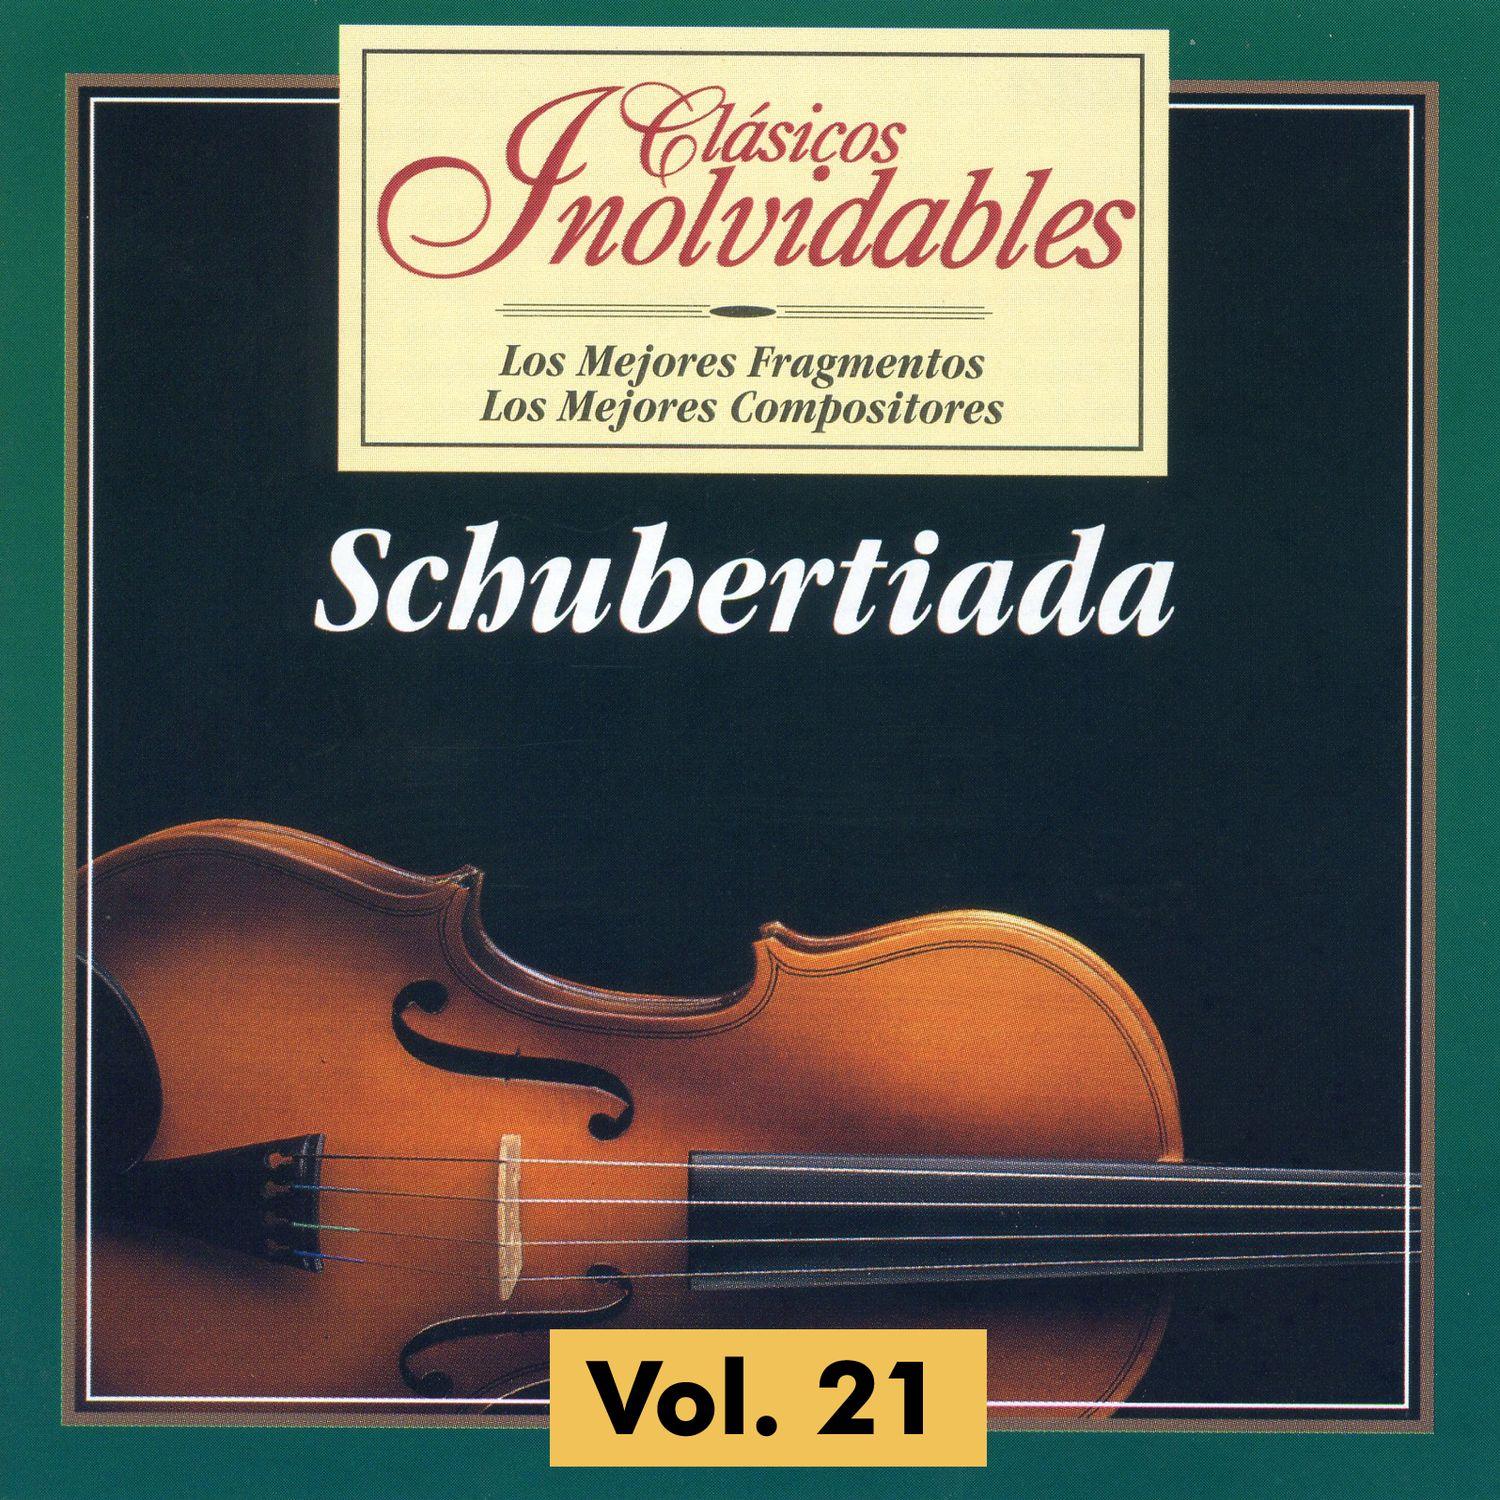 Cla sicos Inolvidables Vol. 21, Schubertiada